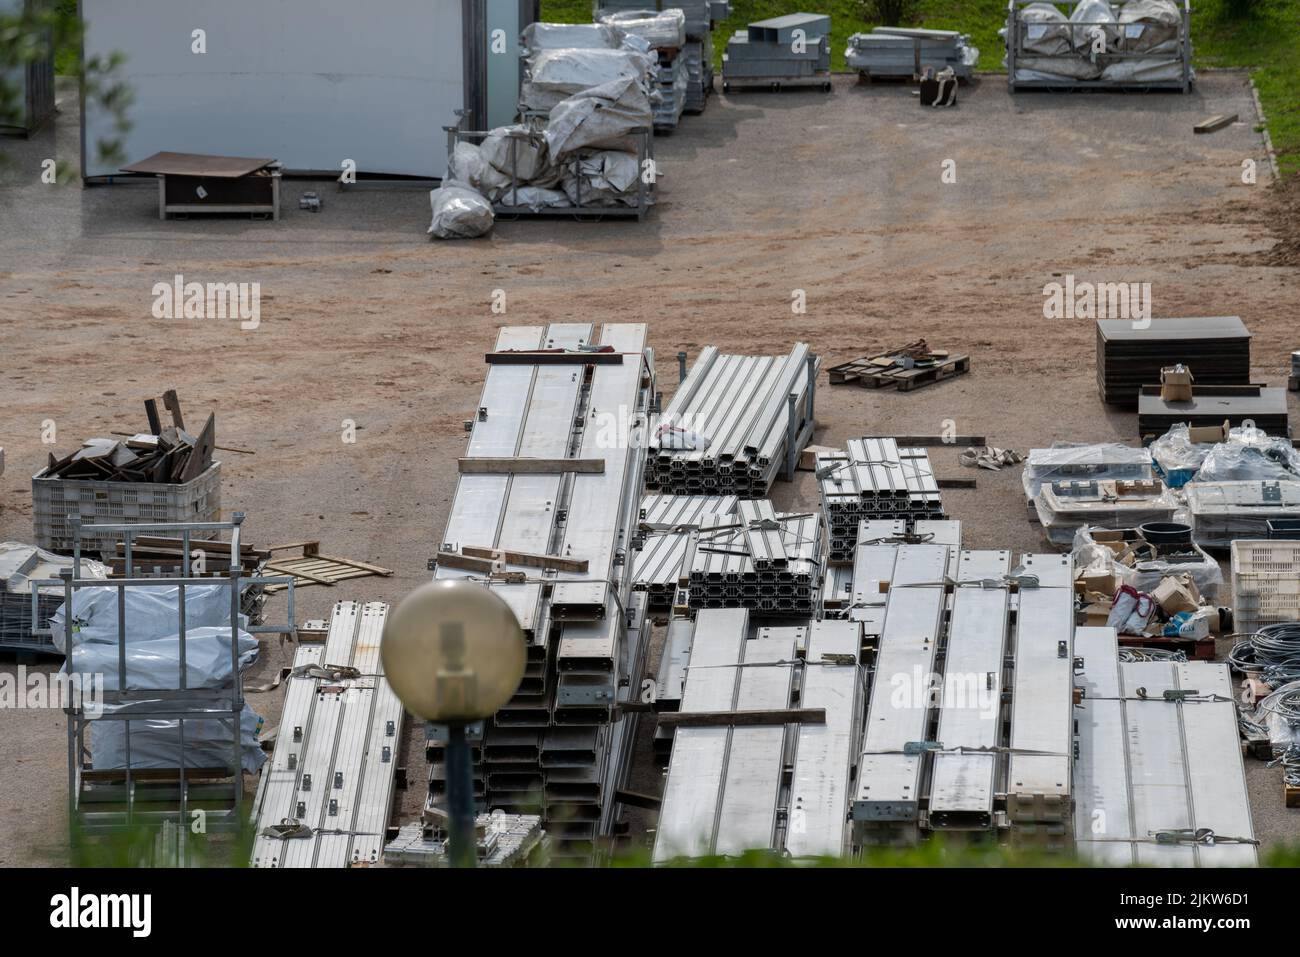 Un gros plan de matériaux de construction métalliques farcis dans l'entrepôt industriel Banque D'Images